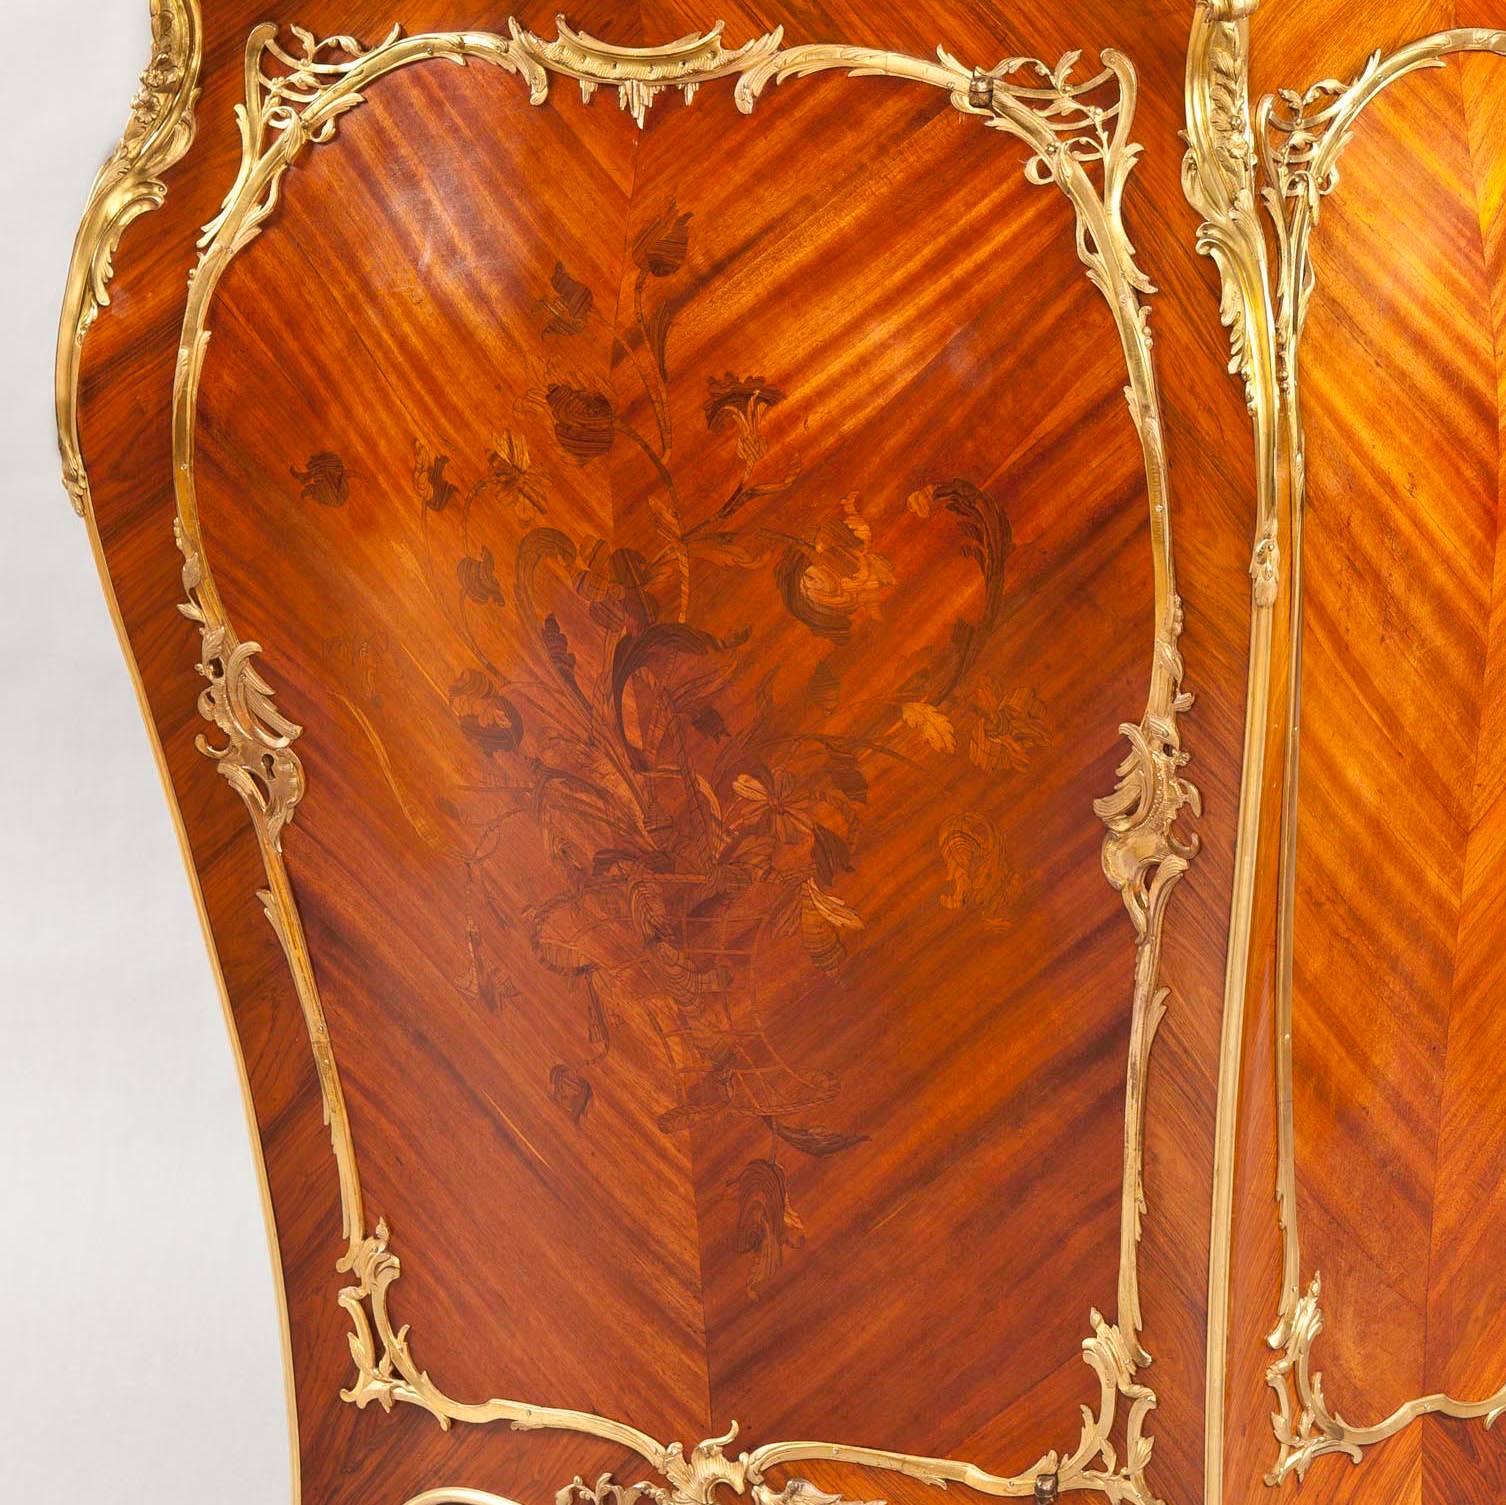 Eine feine Louis XV. Stil Meuble a Hauteur D'Appui 
Nach der Art von J-E. Zwiener

Hergestellt aus Bois Violette, mit gut ausgeführten floralen Intarsien, und mit umfangreichen vergoldeten Bronzebeschlägen von außergewöhnlicher Qualität. Auf